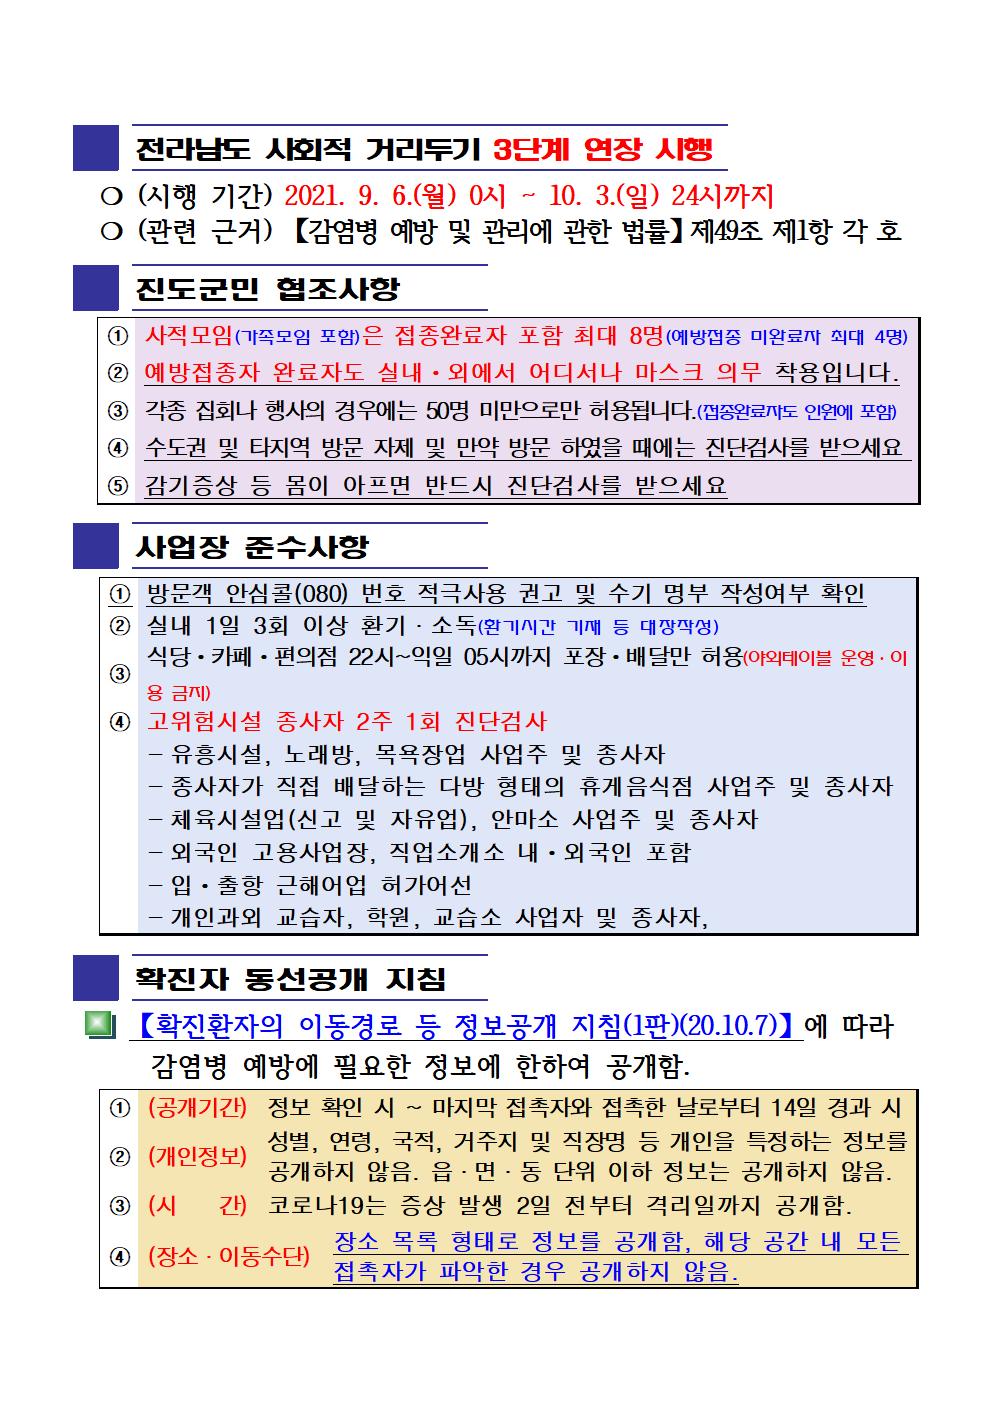 2021년 코로나19 대응 일일상황보고(9월 14일 24시 기준) 첨부#2